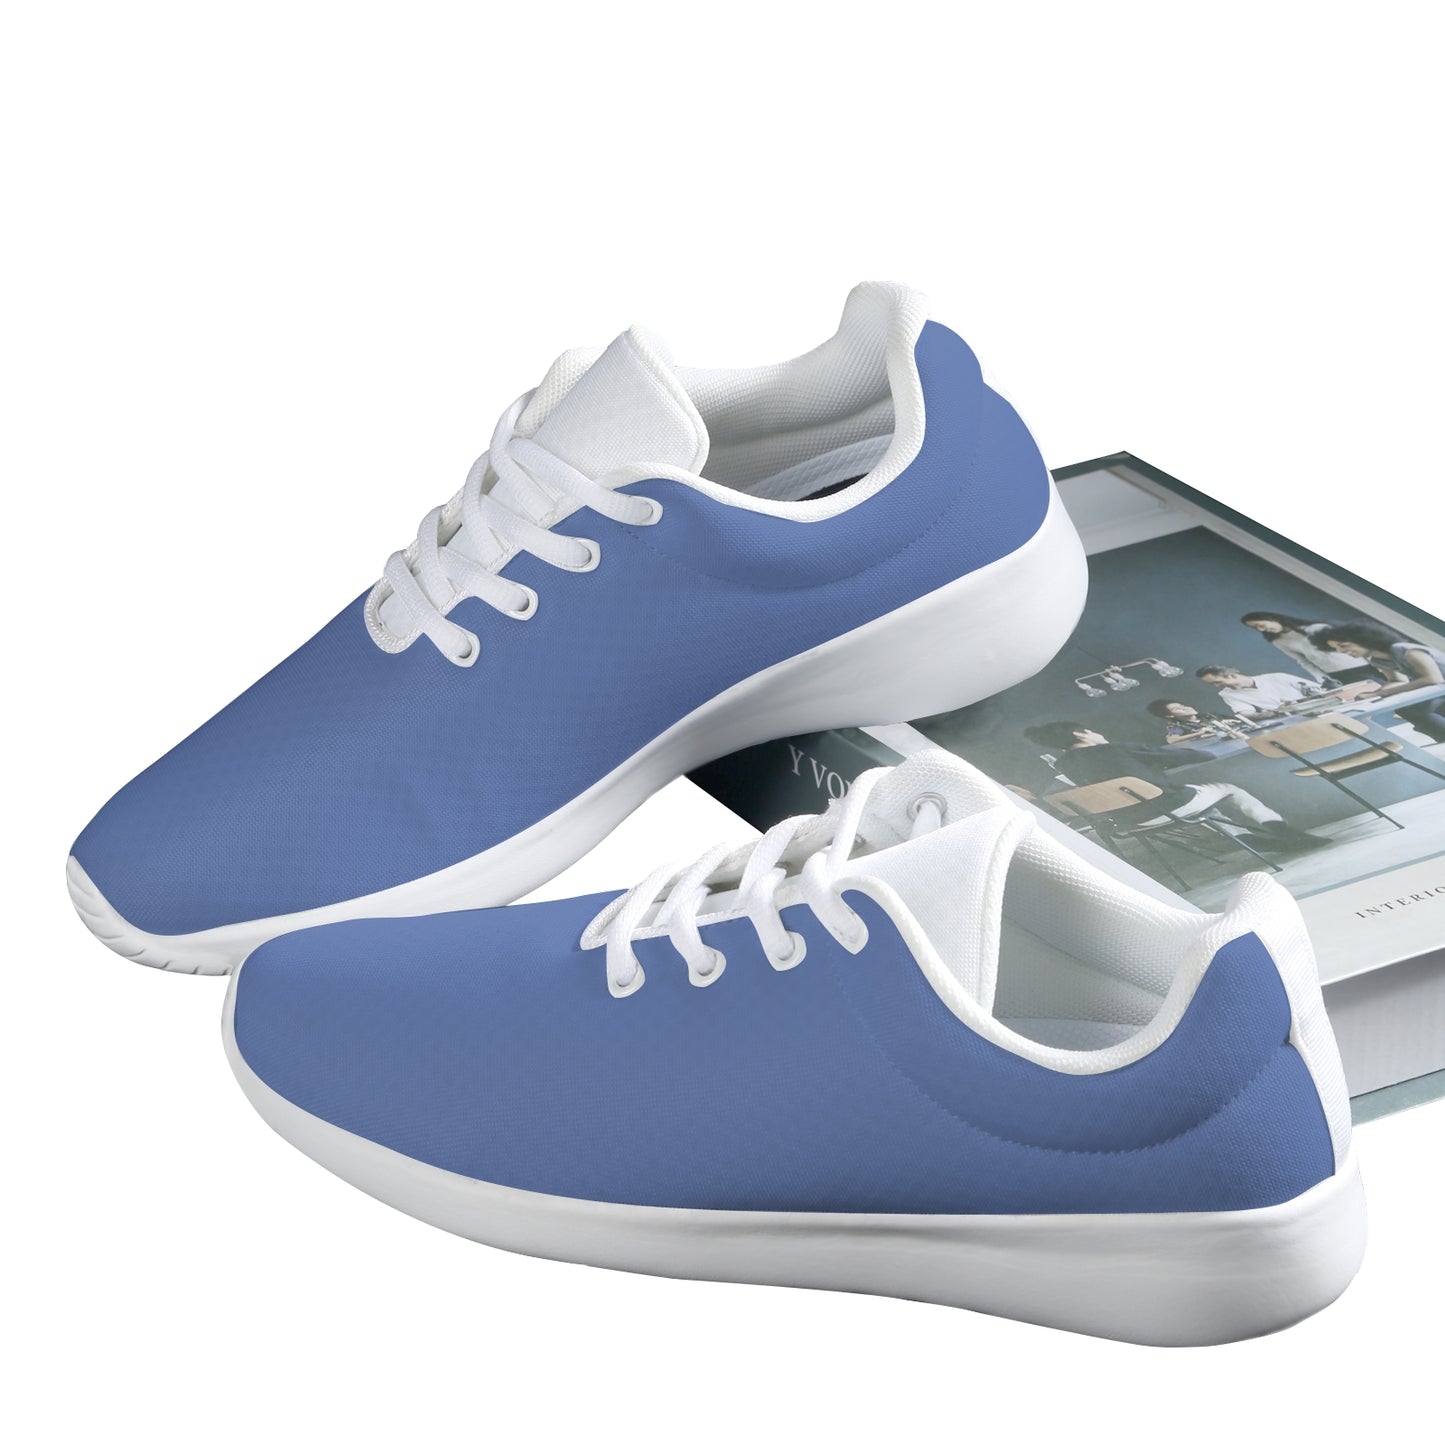 Men's Athletic Shoes - Blue/White Combo